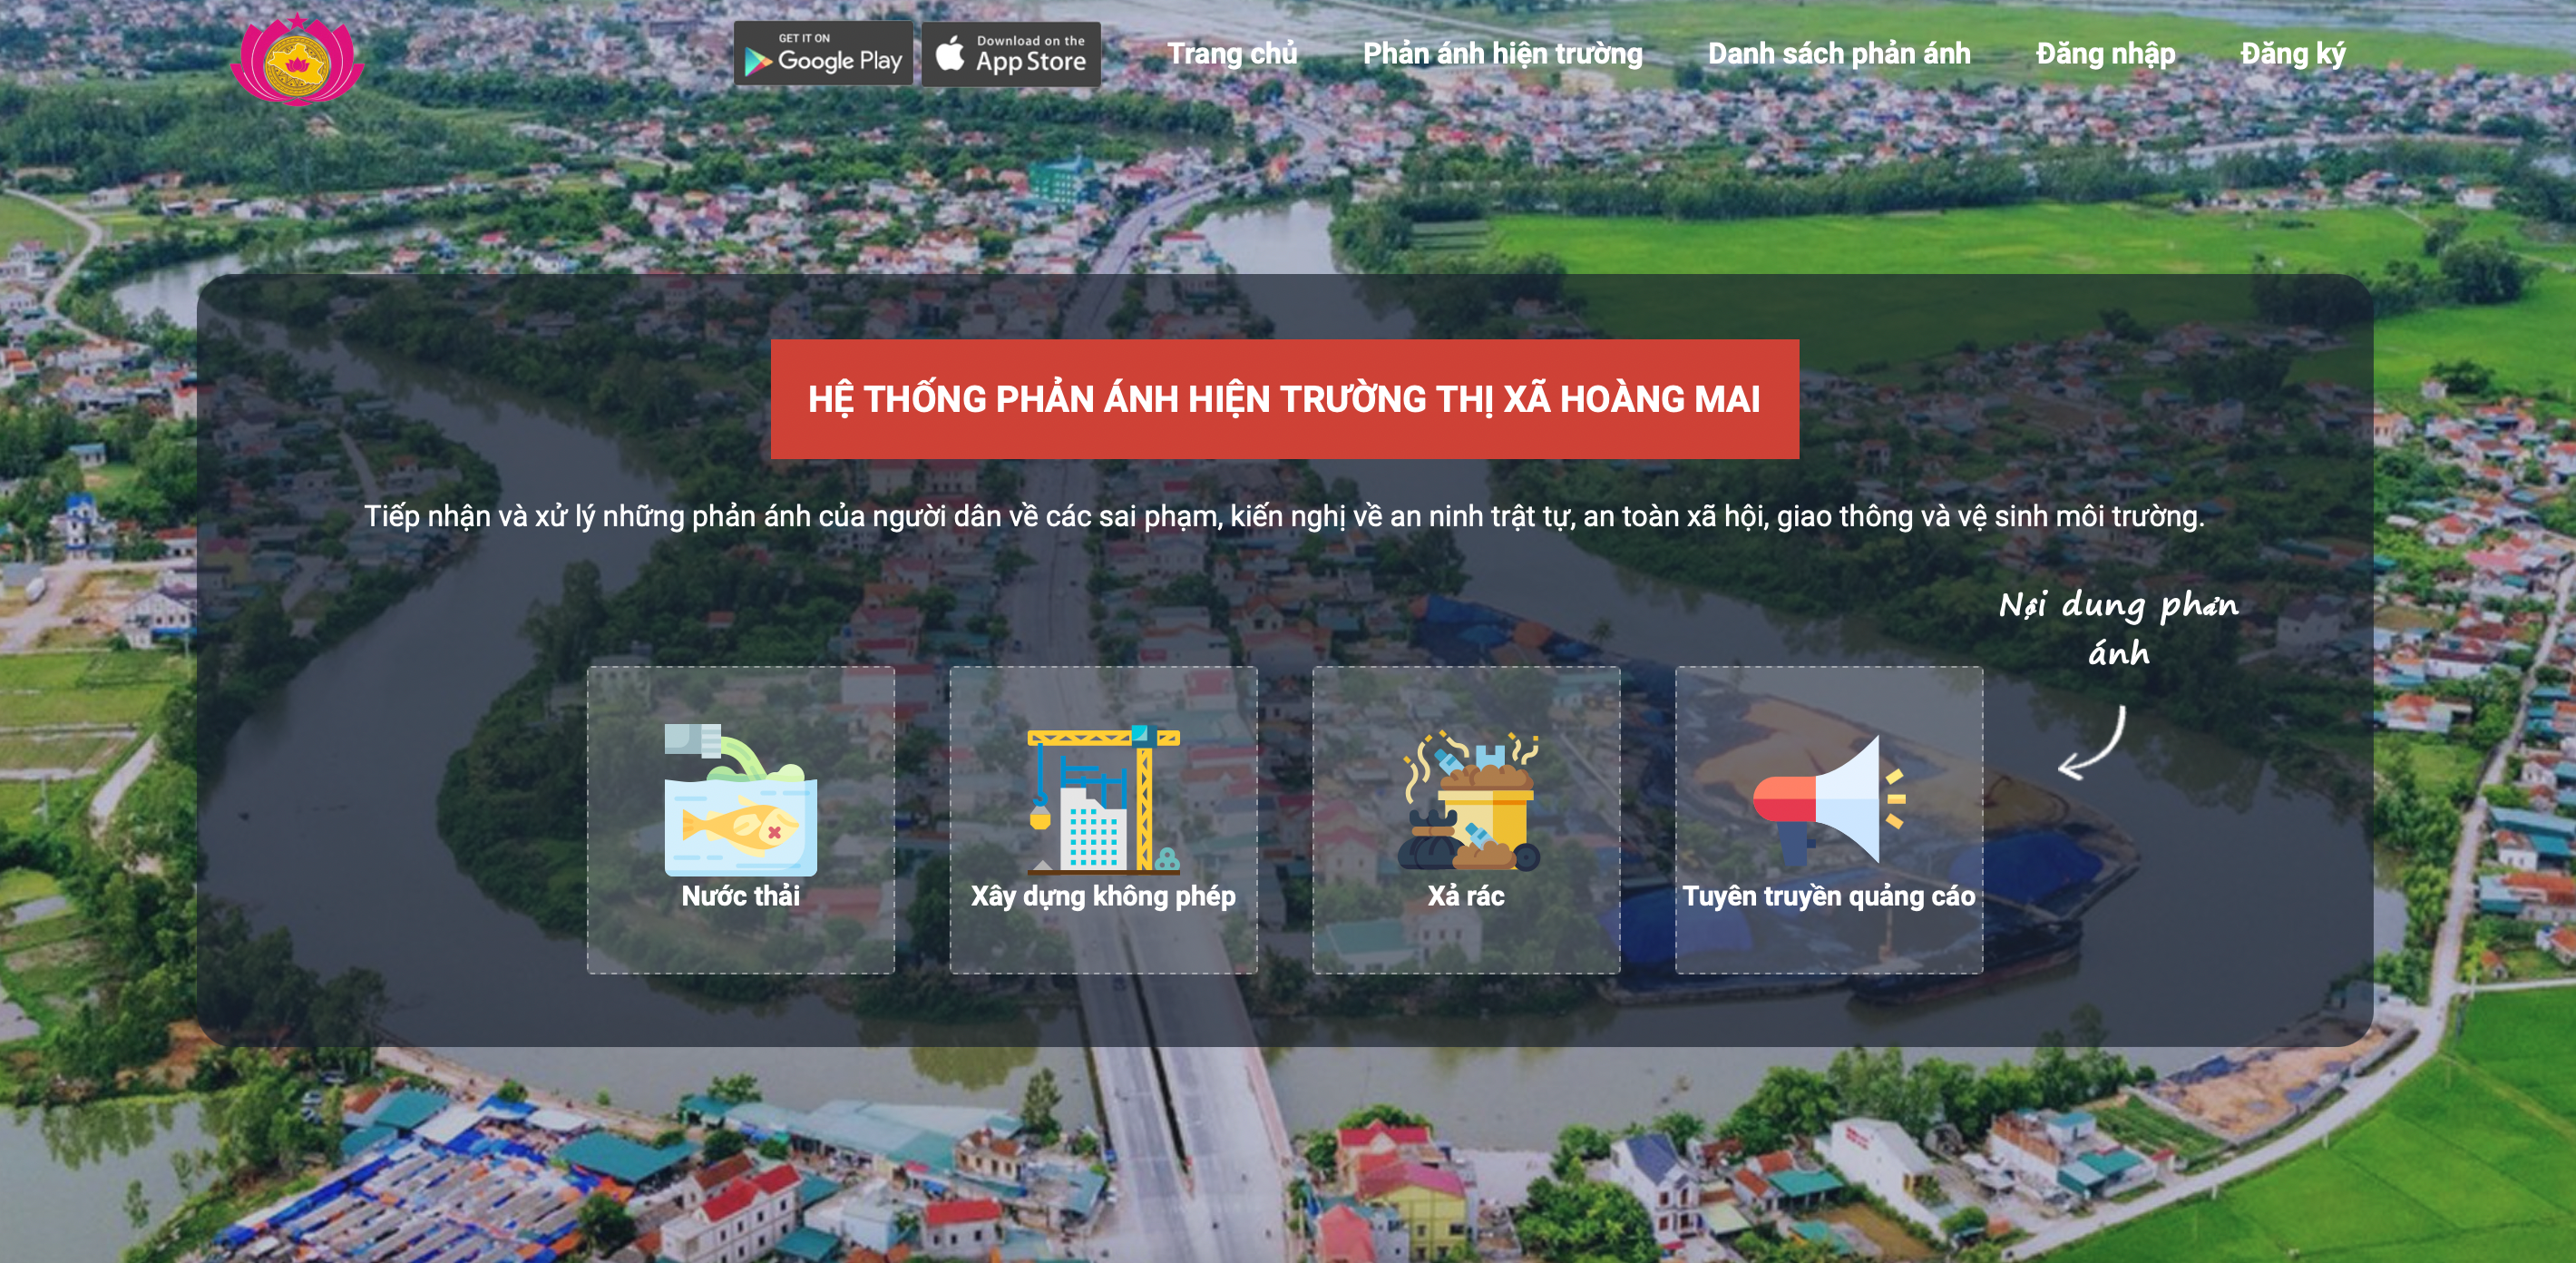 Hiện nay hệ thống tương tác giữa chính quyền và người dân đã được triển khai tại thị xã Hoàng Mai trên nền tảng website và ứng dụng Hoangmaitoiyeu